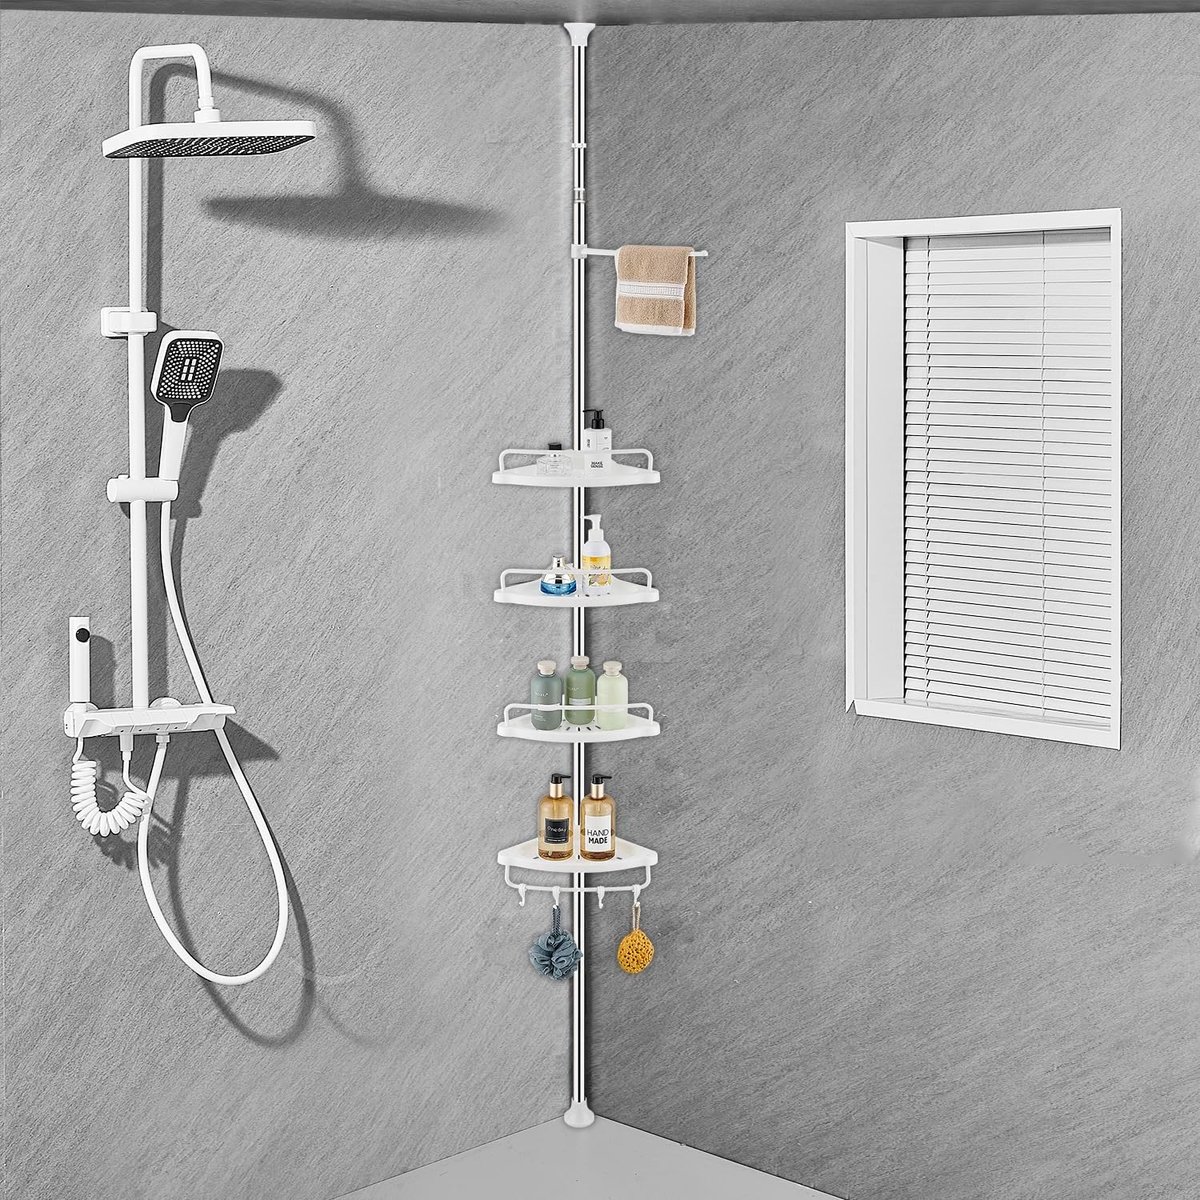 Telescopische doucheplank, verstelbare hoekdoucheplank met 4 planken, 4 haken, 1 handdoekenrek voor badkameropslag, roestvrij, 70-330 cm van vloer tot plafond, wit